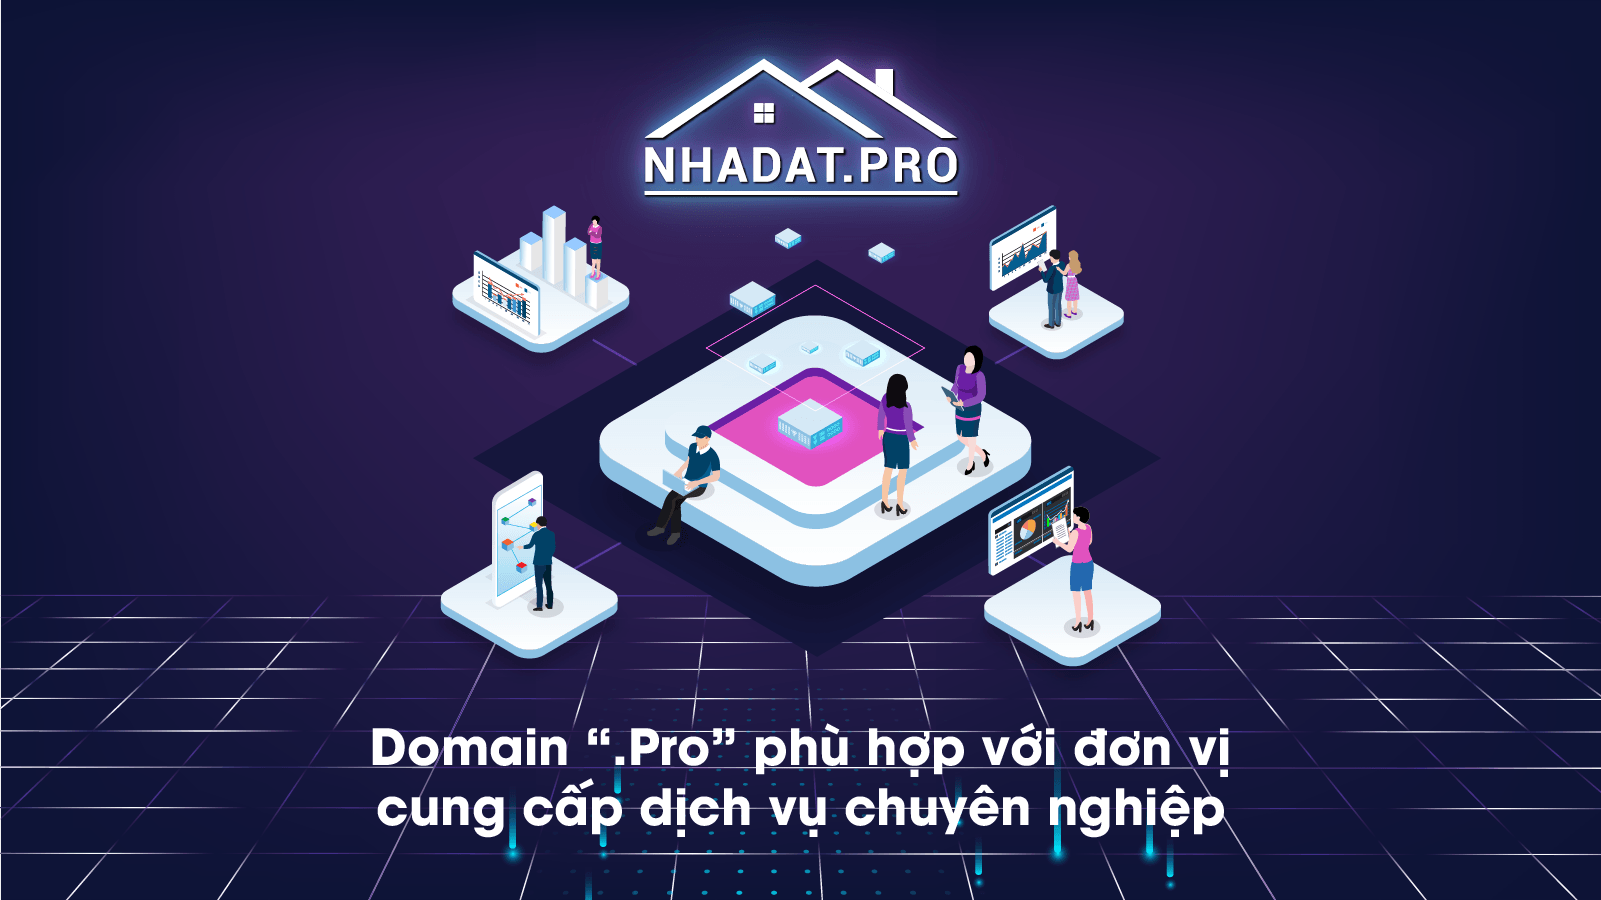 Domain “.Pro” phù hợp với đơn vị cung cấp dịch vụ chuyên nghiệp